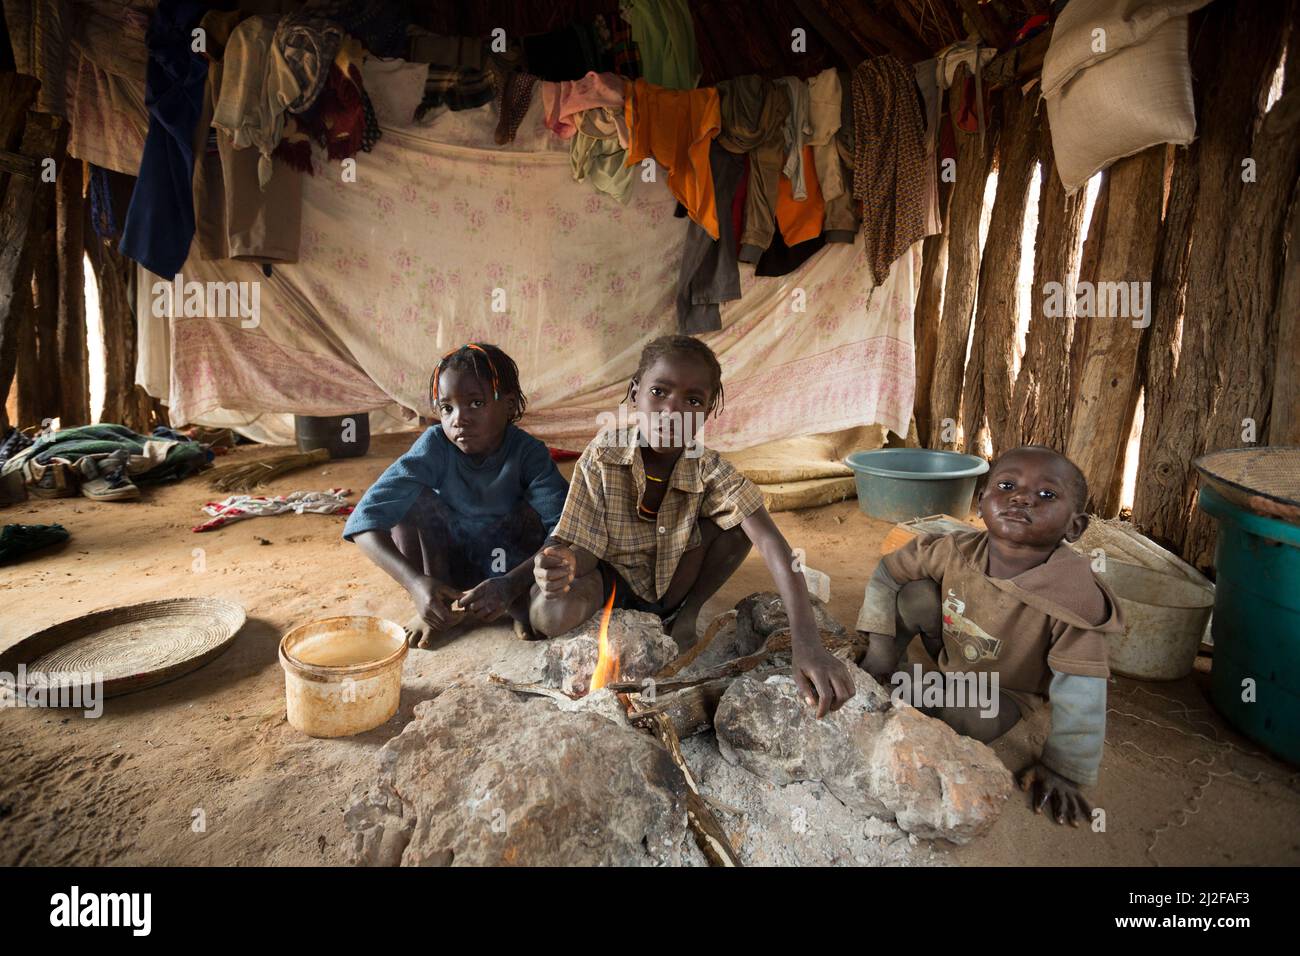 Trois enfants se réchauffent par le feu dans leur cabane à une pièce dans la région d'Omusati, en Namibie, en Afrique du Sud-Ouest. Banque D'Images